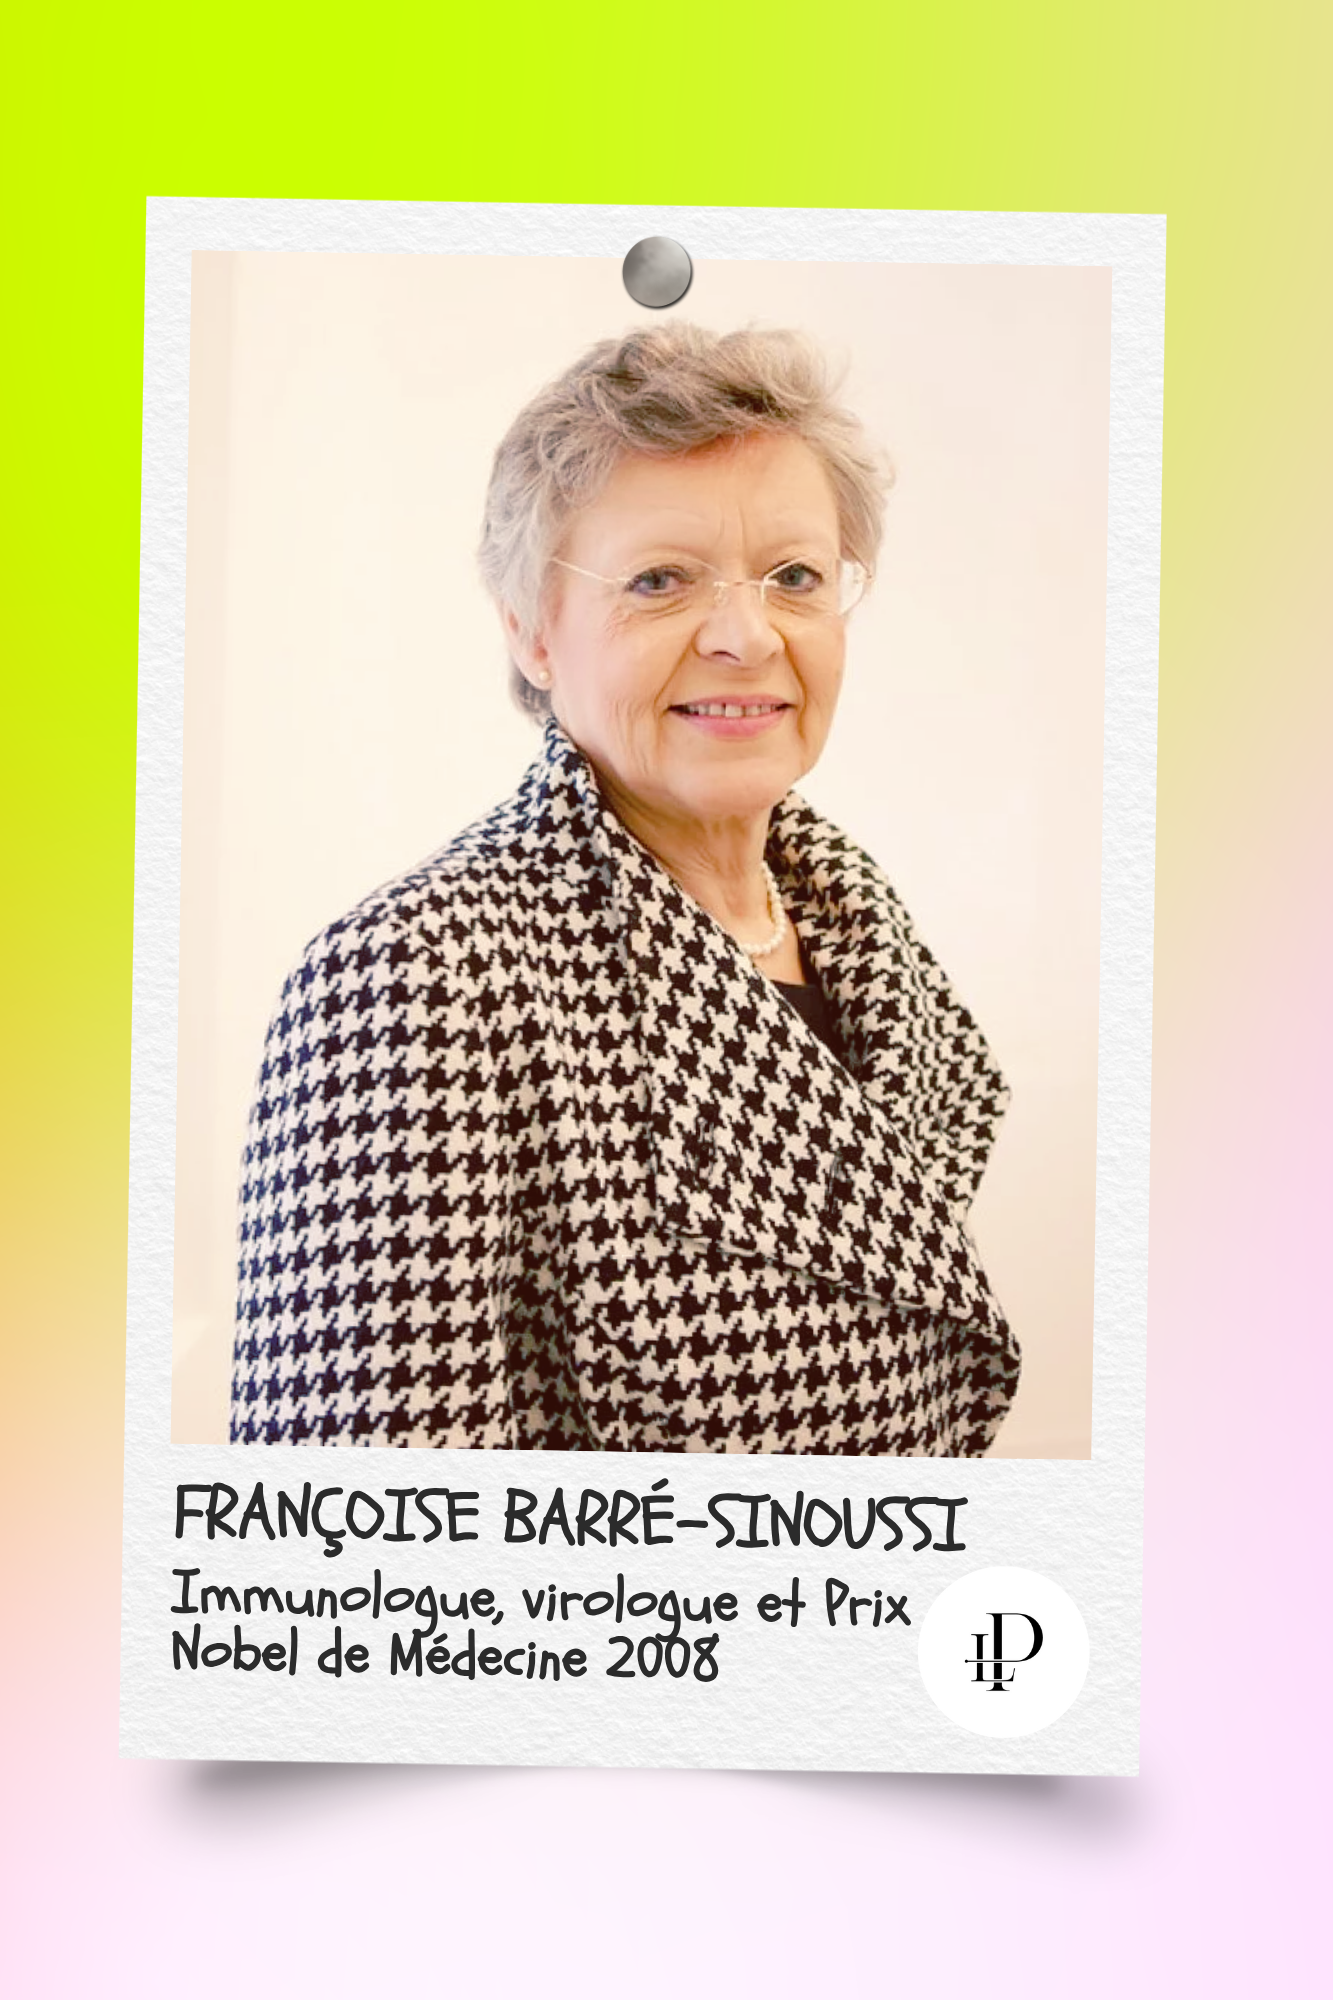 Françoise Barré